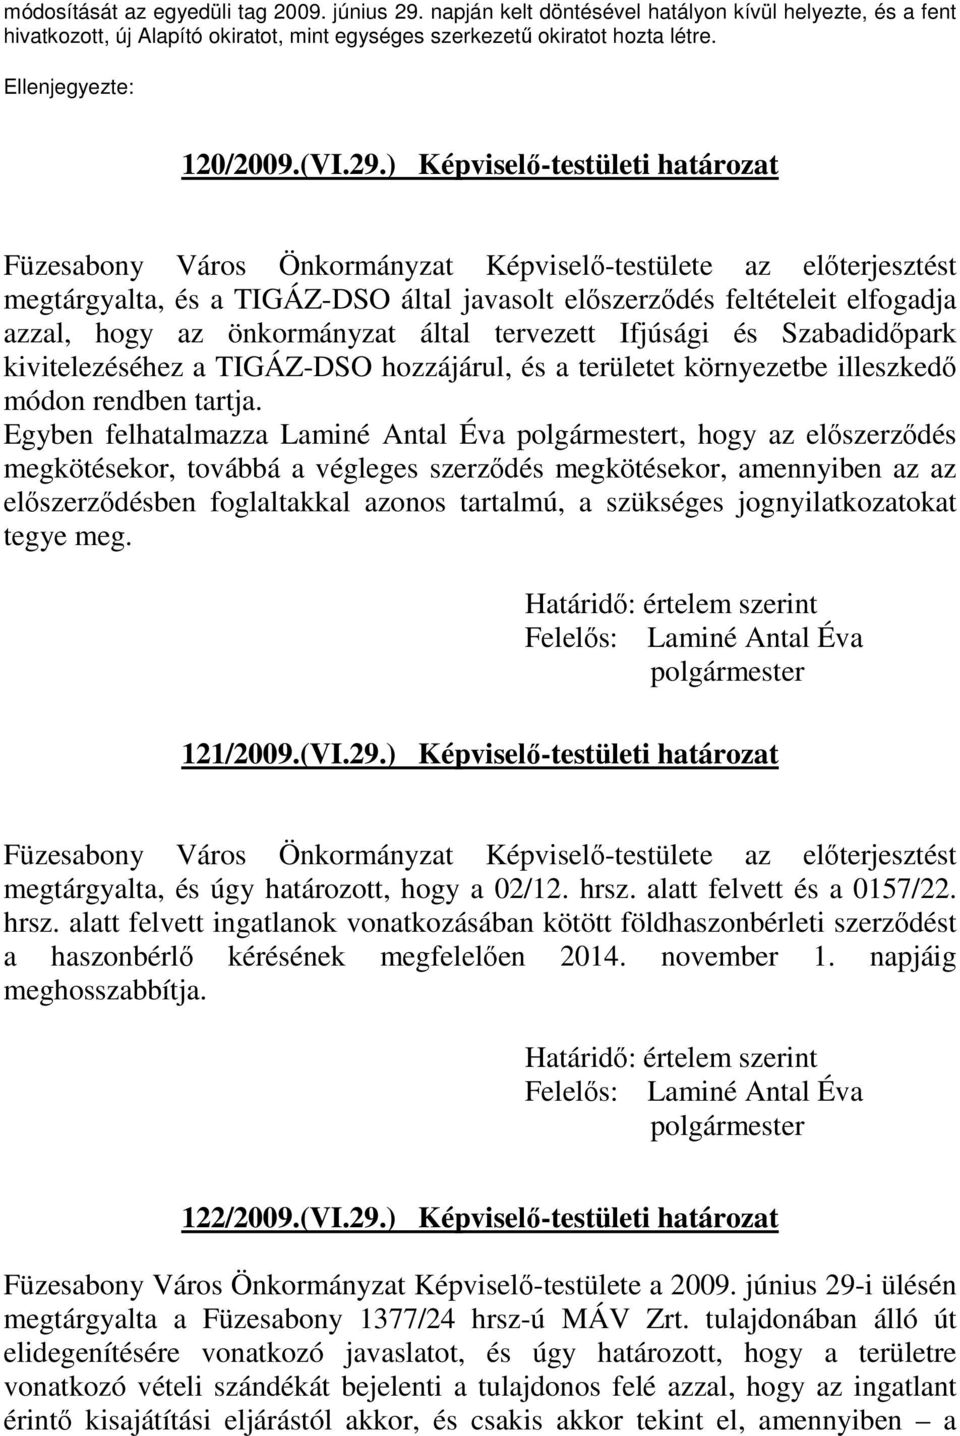 ) Képviselı-testületi határozat Füzesabony Város Önkormányzat Képviselı-testülete az elıterjesztést megtárgyalta, és a TIGÁZ-DSO által javasolt elıszerzıdés feltételeit elfogadja azzal, hogy az